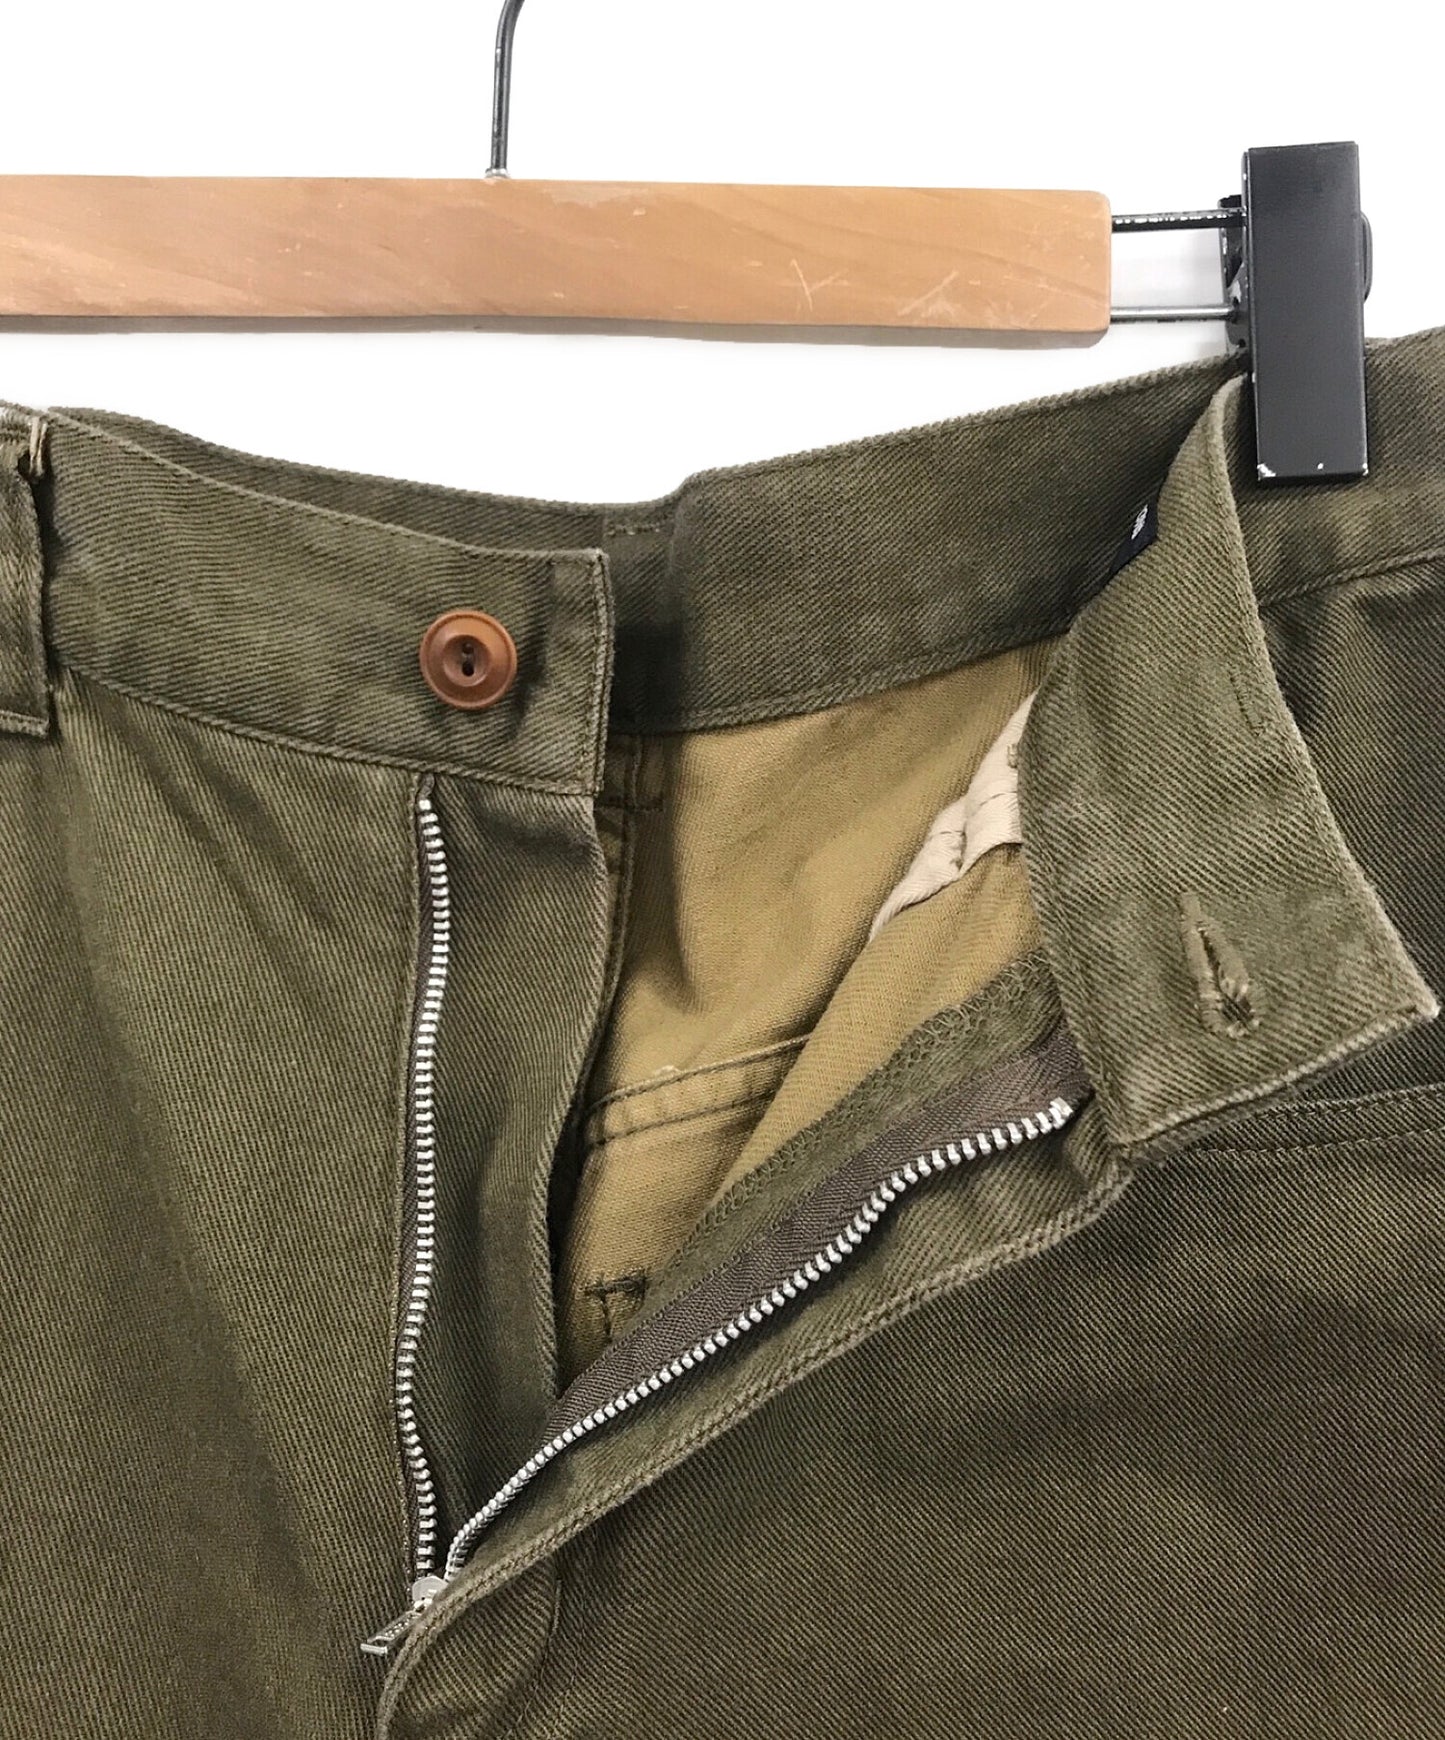 Comme des garcons homme ผลิตภัณฑ์ย้อมกางเกงเรียว HT-P040/AD2017